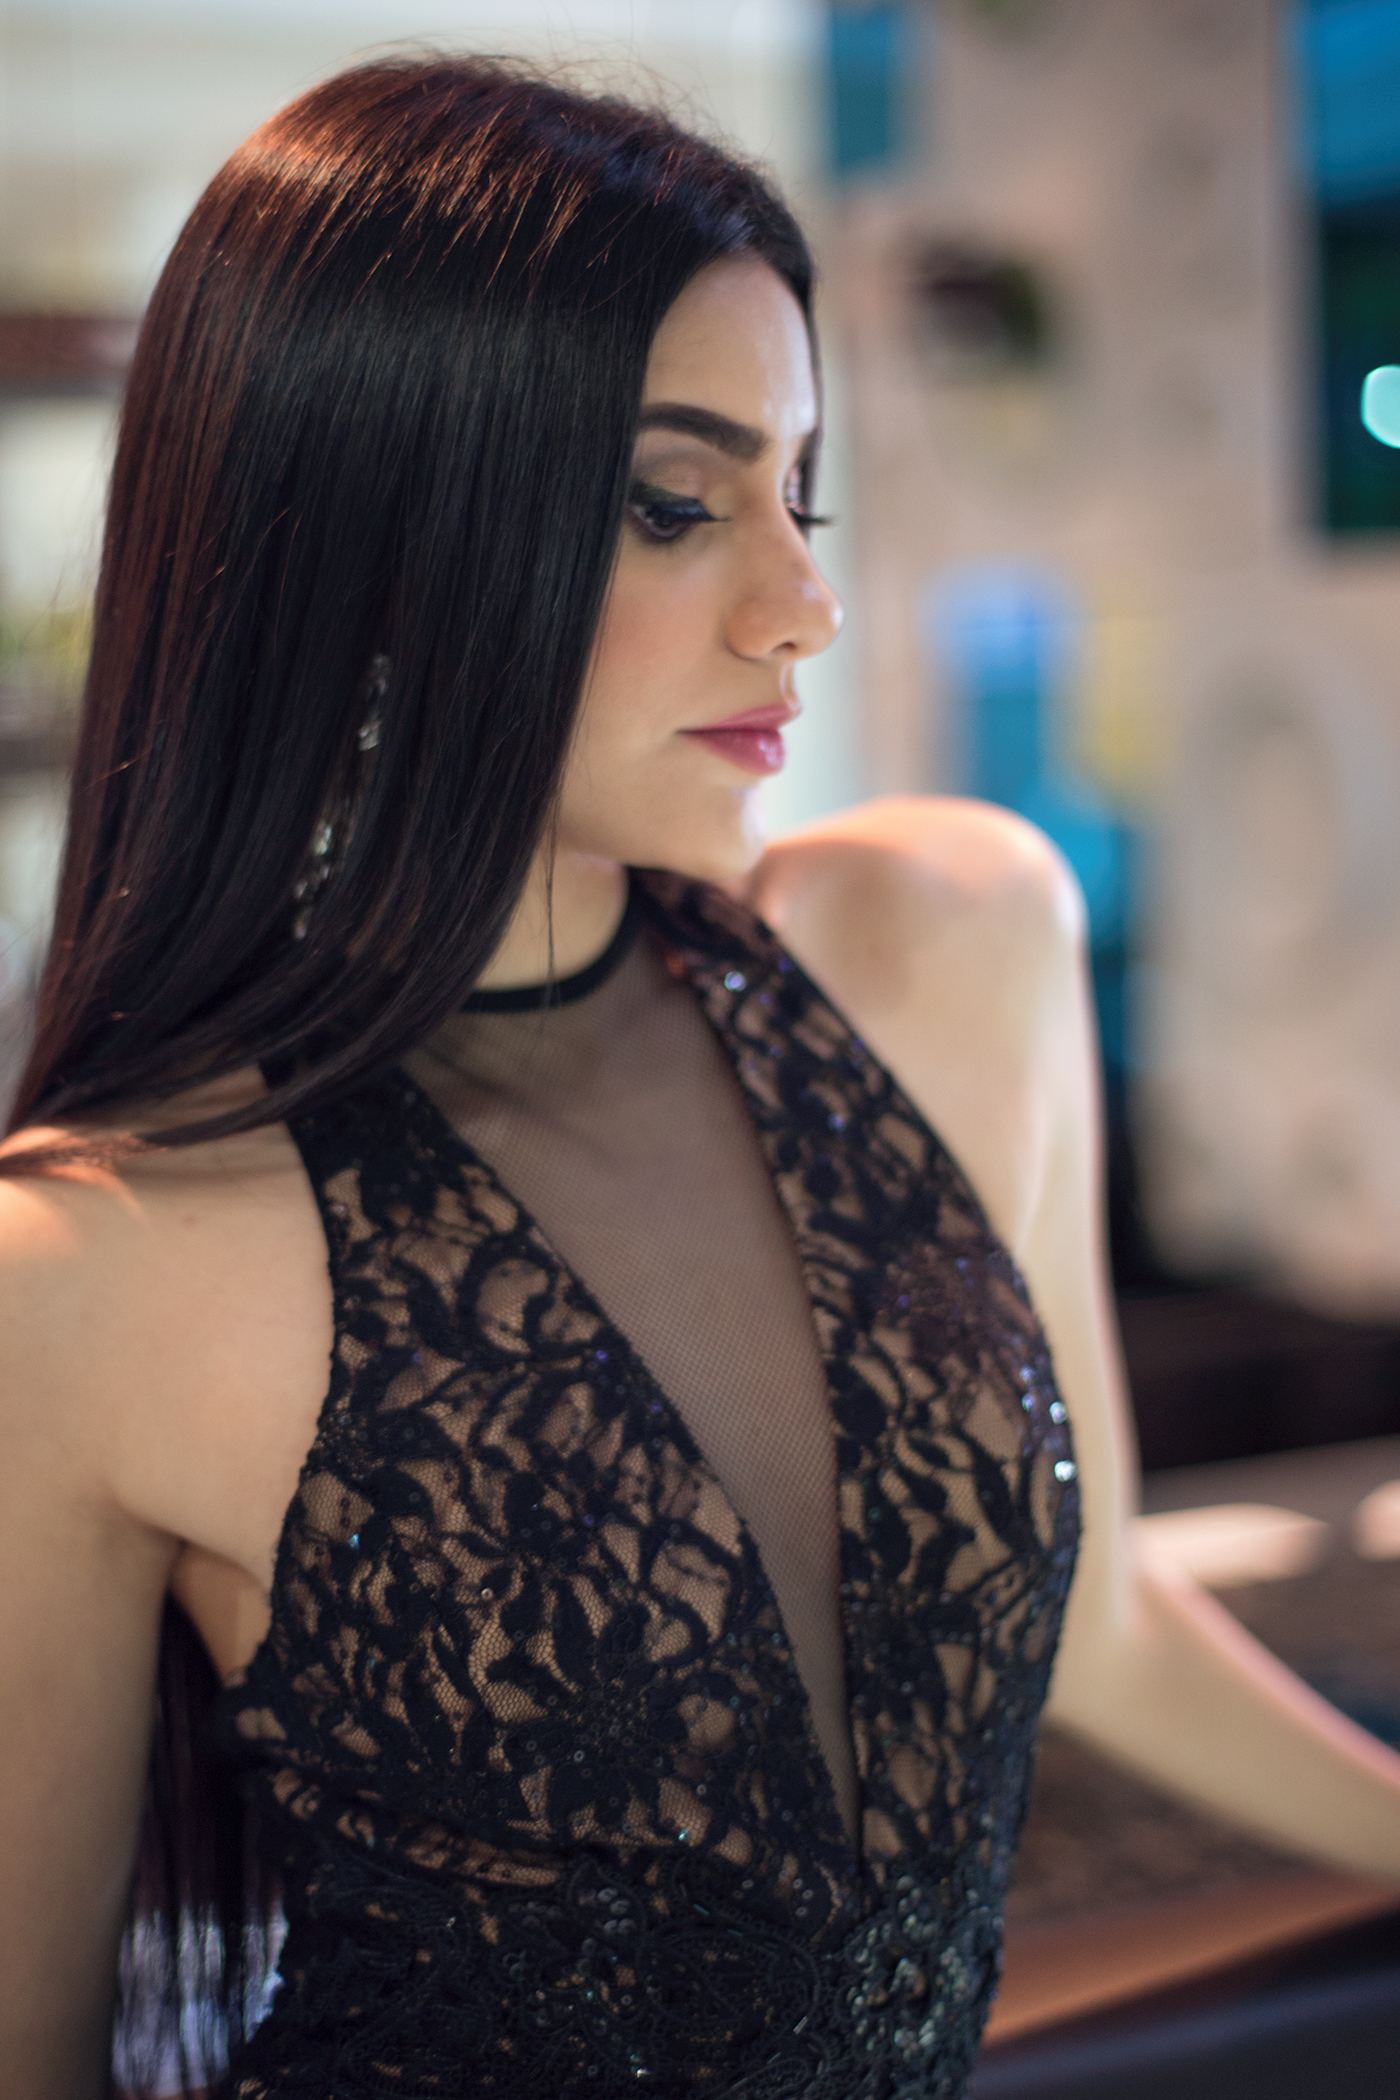 miss session photoshoot photoshop lightroom luxury dress venezuela carabobo